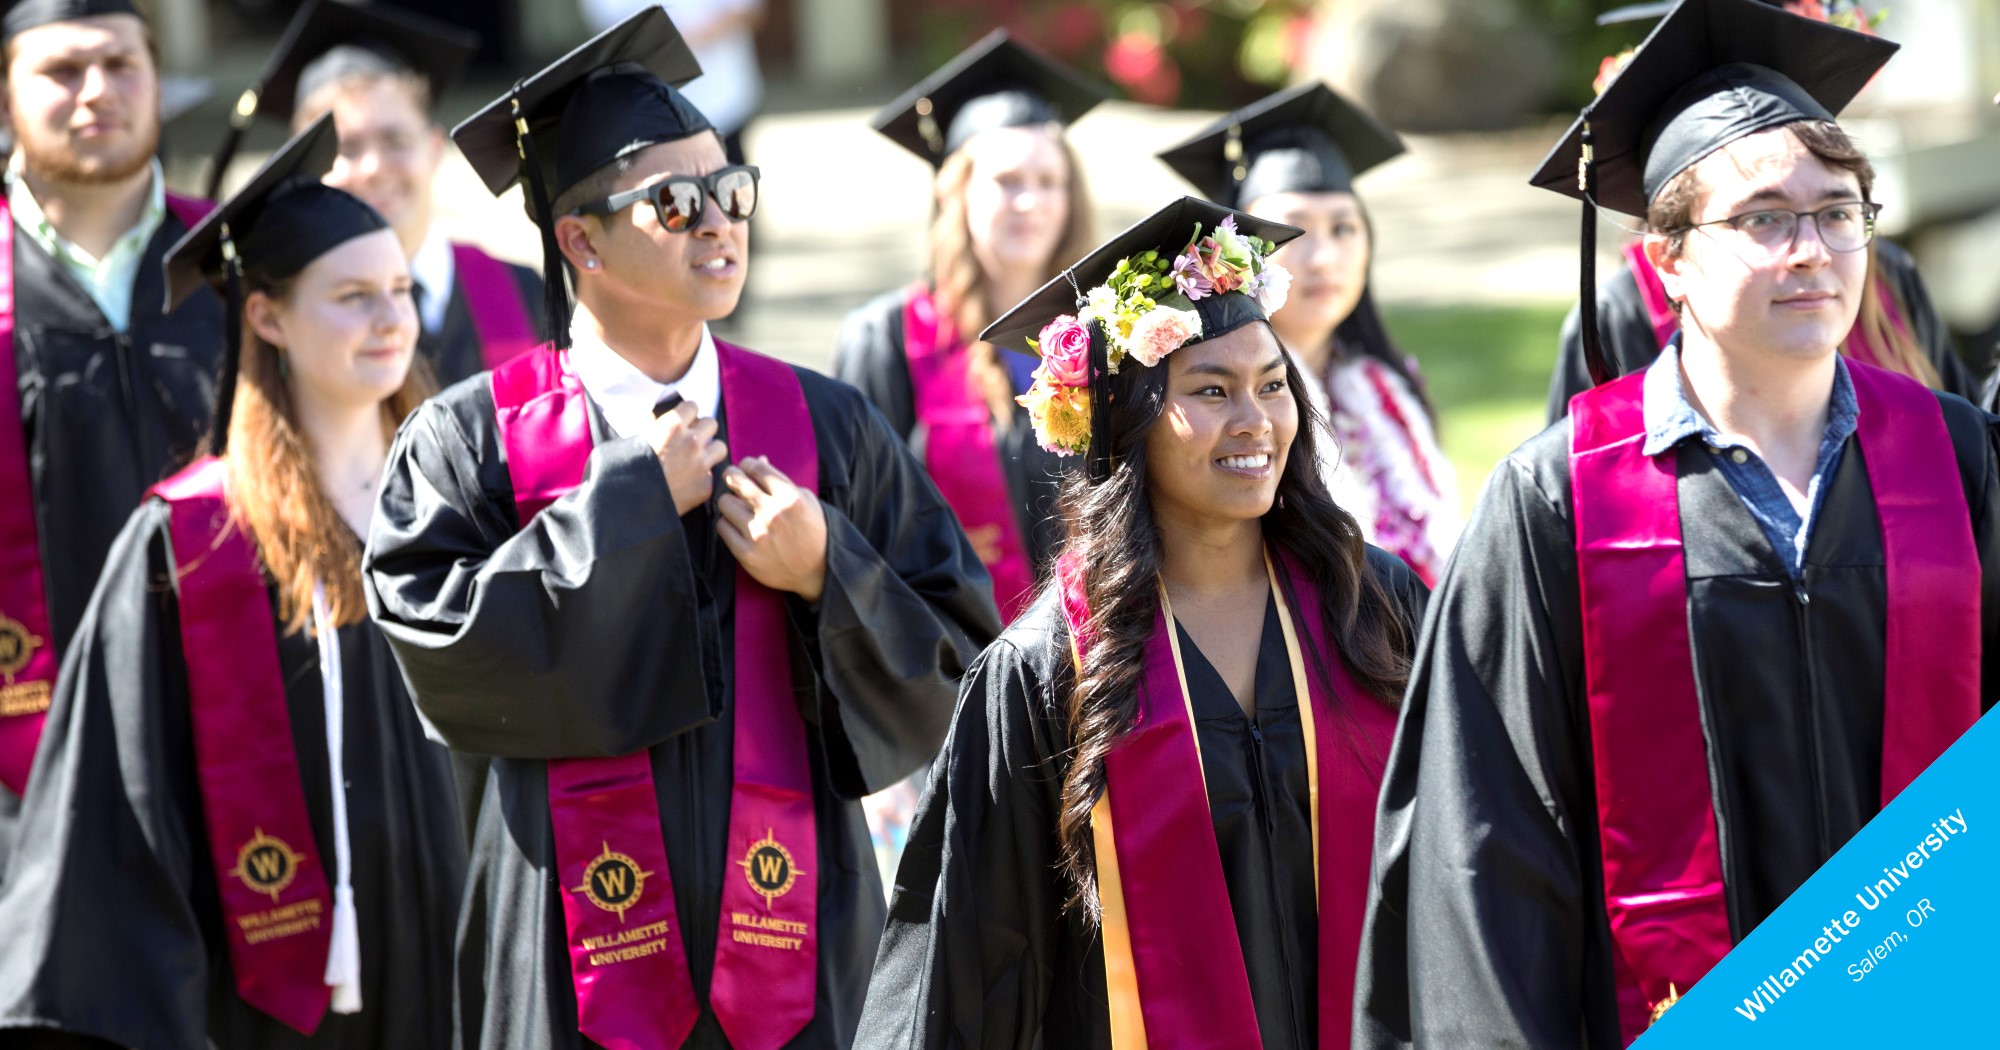 Smiling graduates of Willamette University